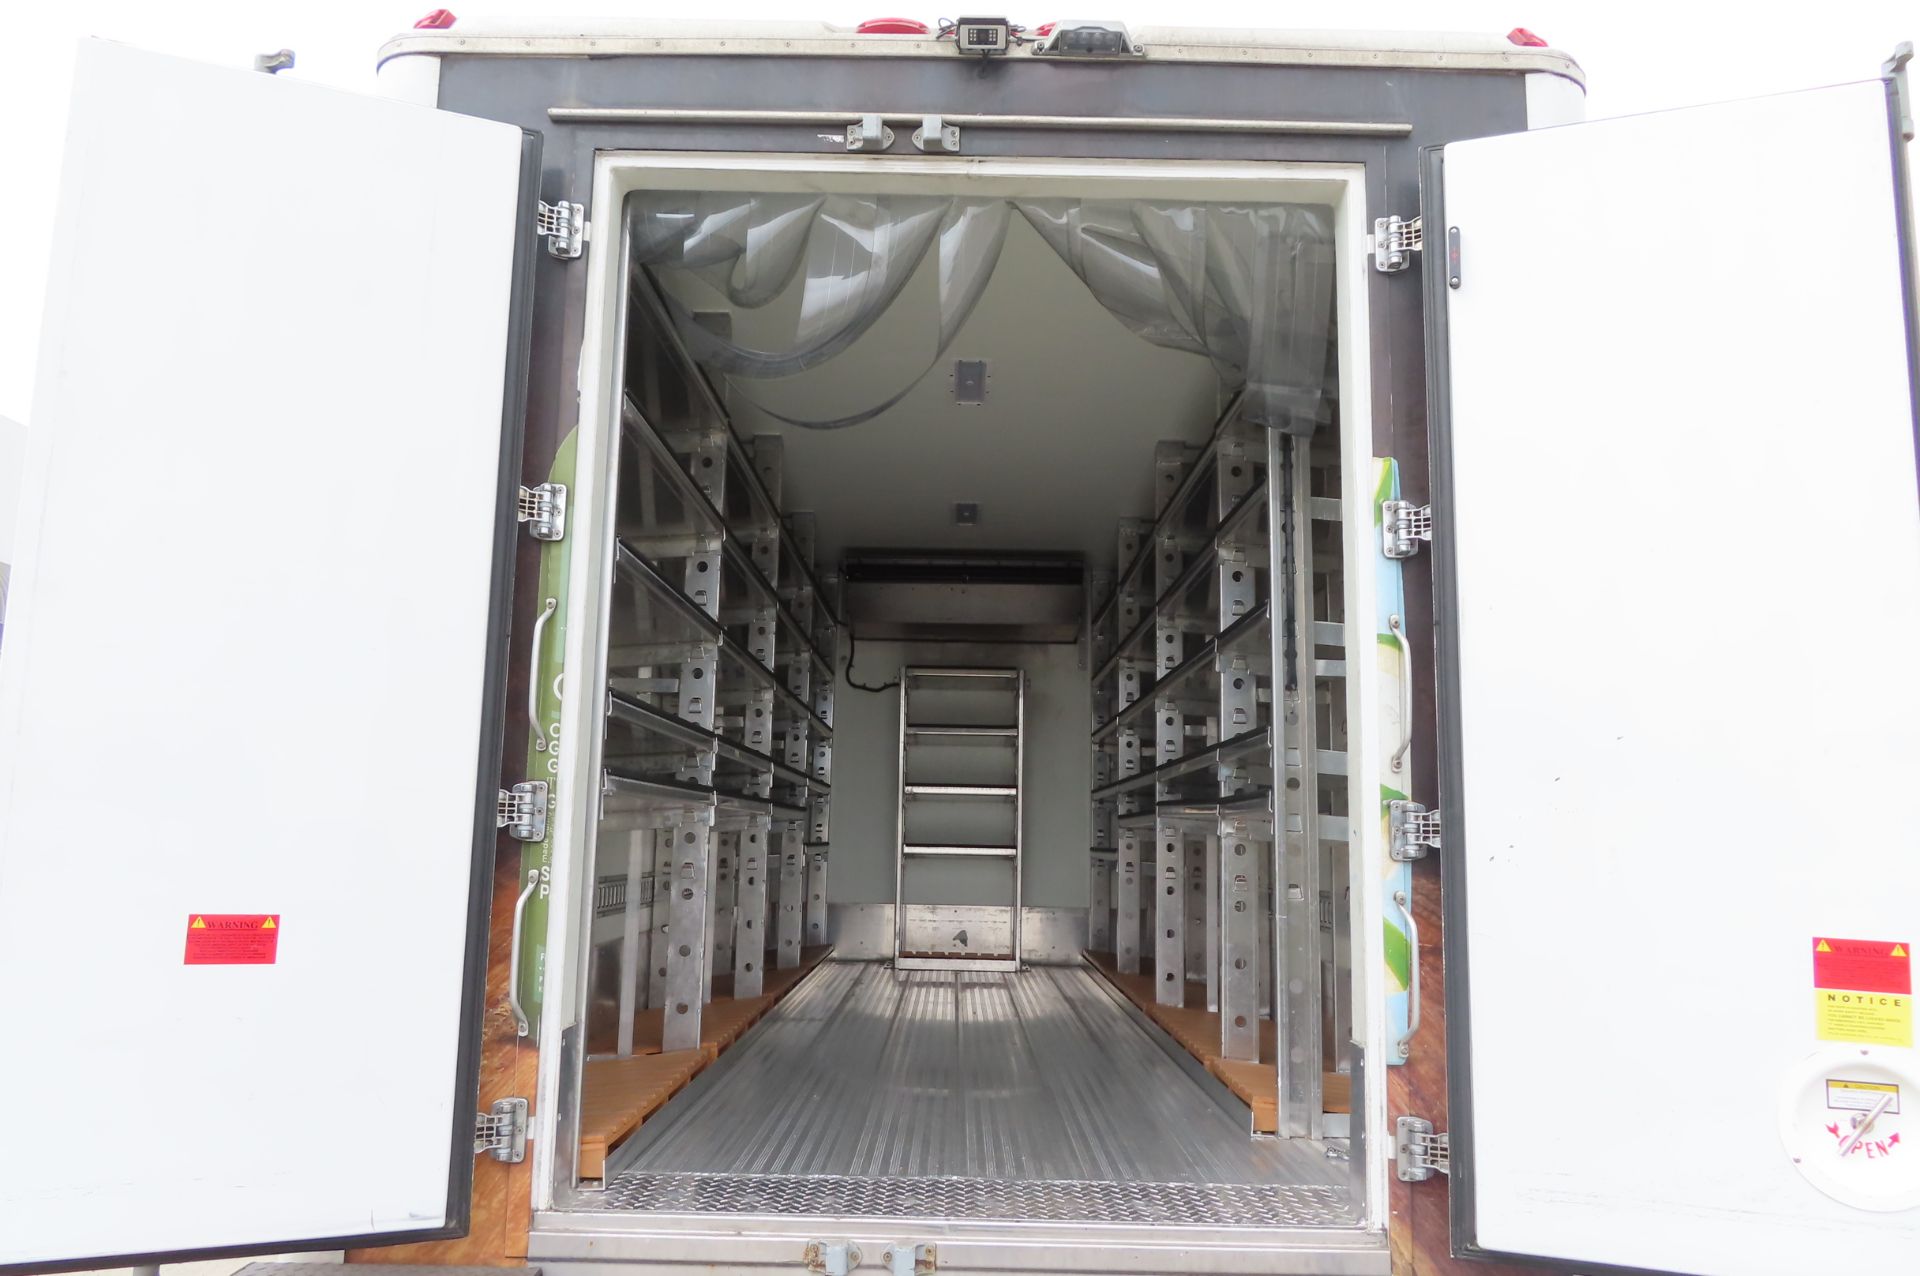 2019 Isuzu refrigerated truck - Image 5 of 7